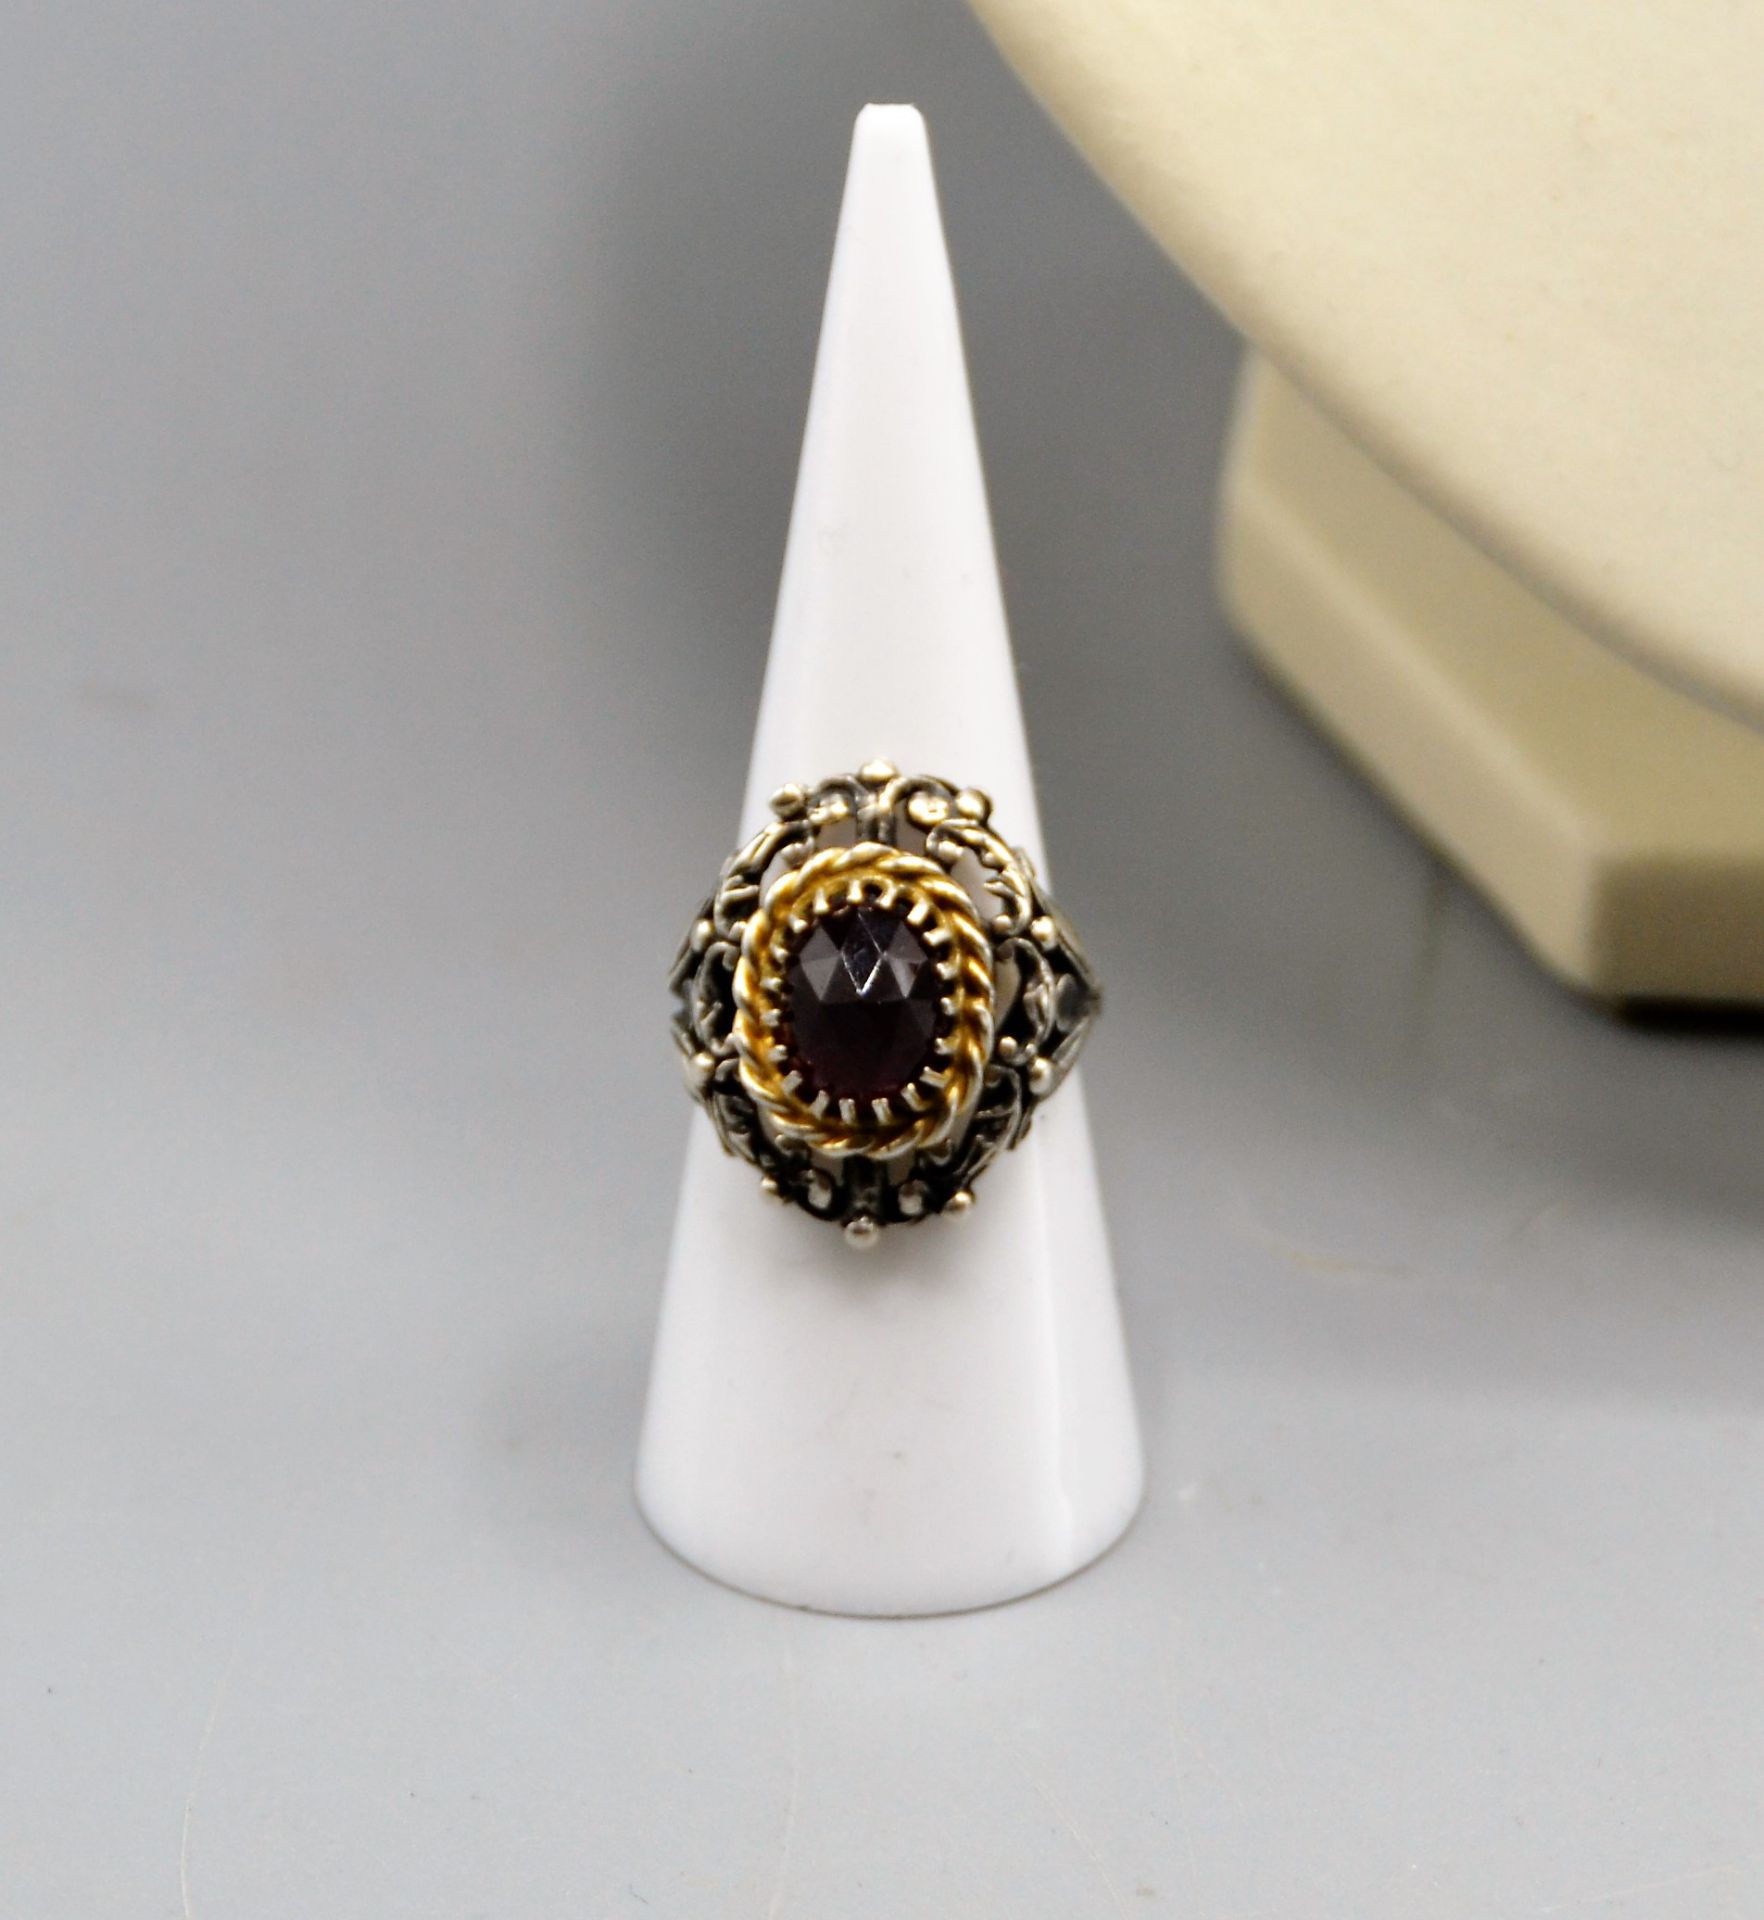 Granat Silber Trachtenschmuck Set Collier Ohrringe Ring, Collier ca. 41-43 cm, Ring Ø ca. 17 mm, al - Bild 3 aus 3